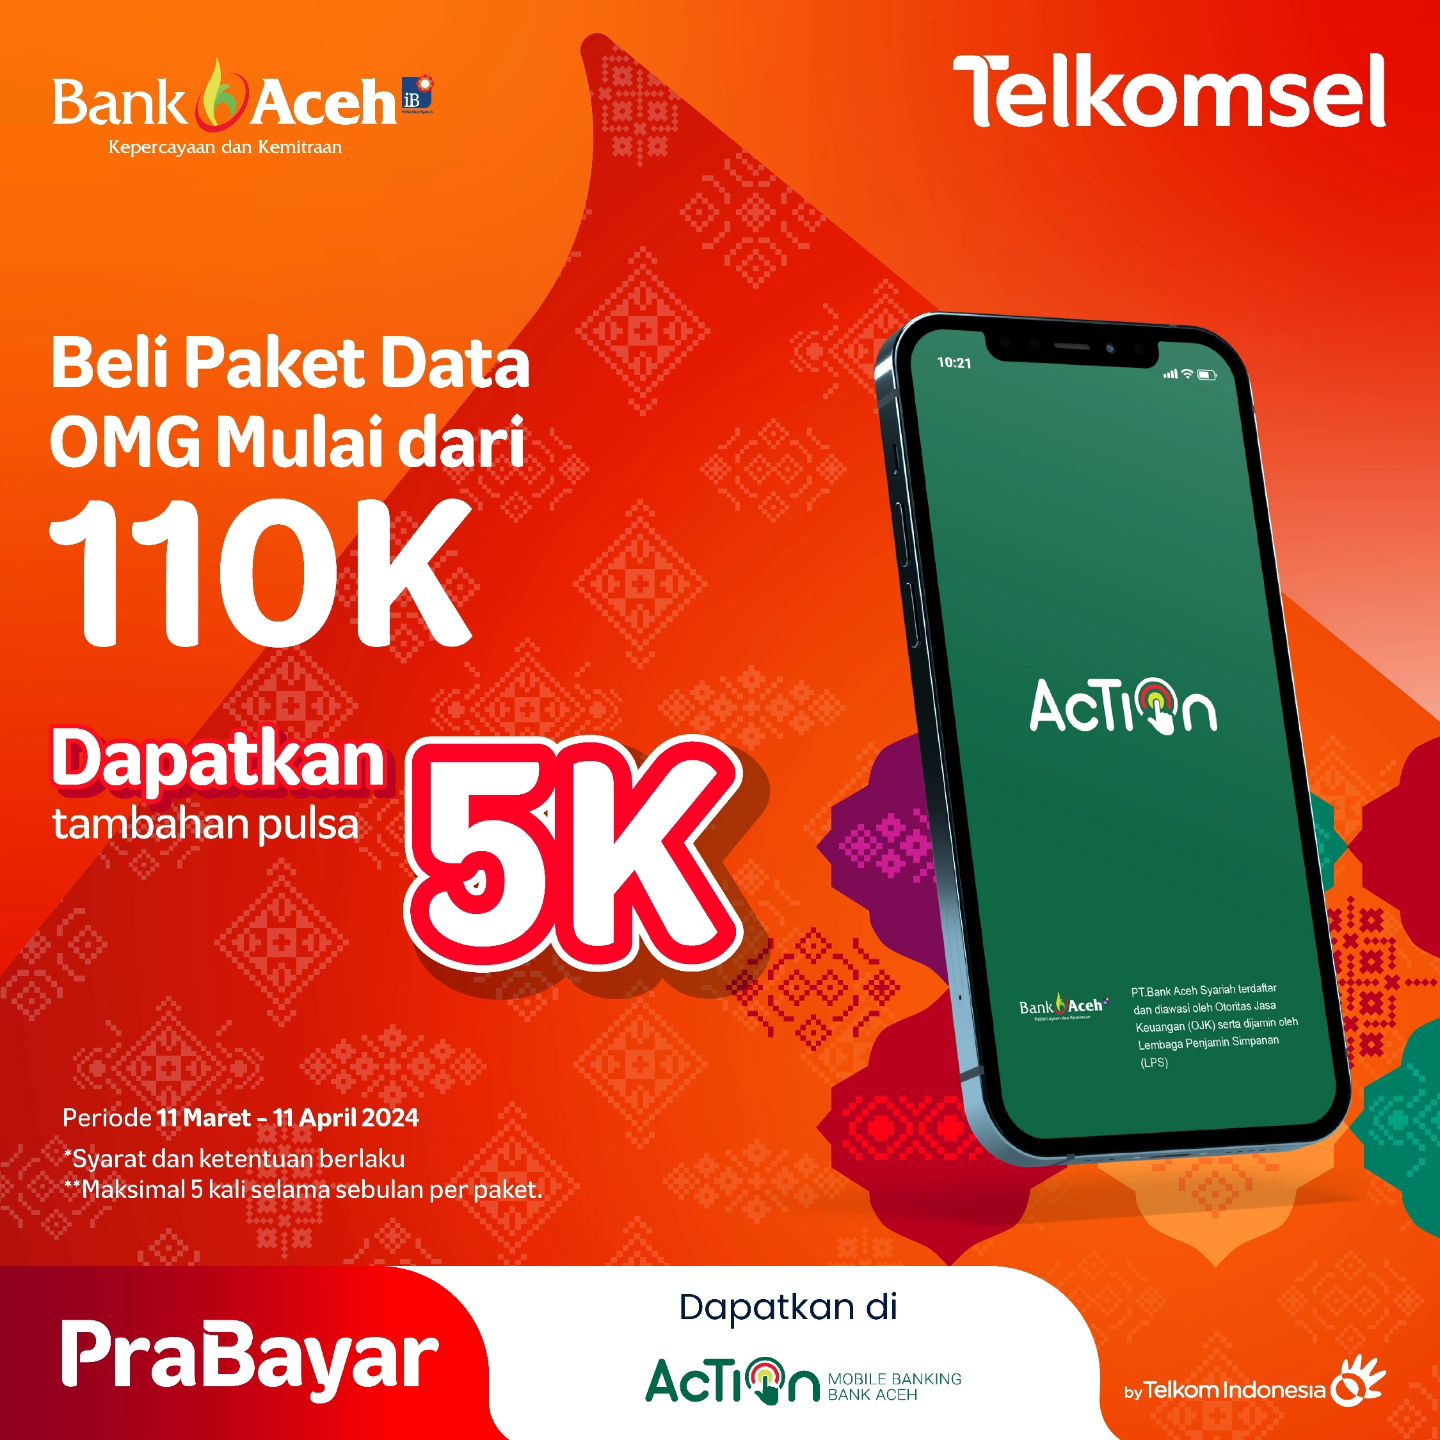 Bank Aceh - Telkomsel, Beli Paket Data mulai dari 110K OMG melalui Aplikasi Action Bank Aceh Syariah - Periode 11 Maret - 11 April 2024